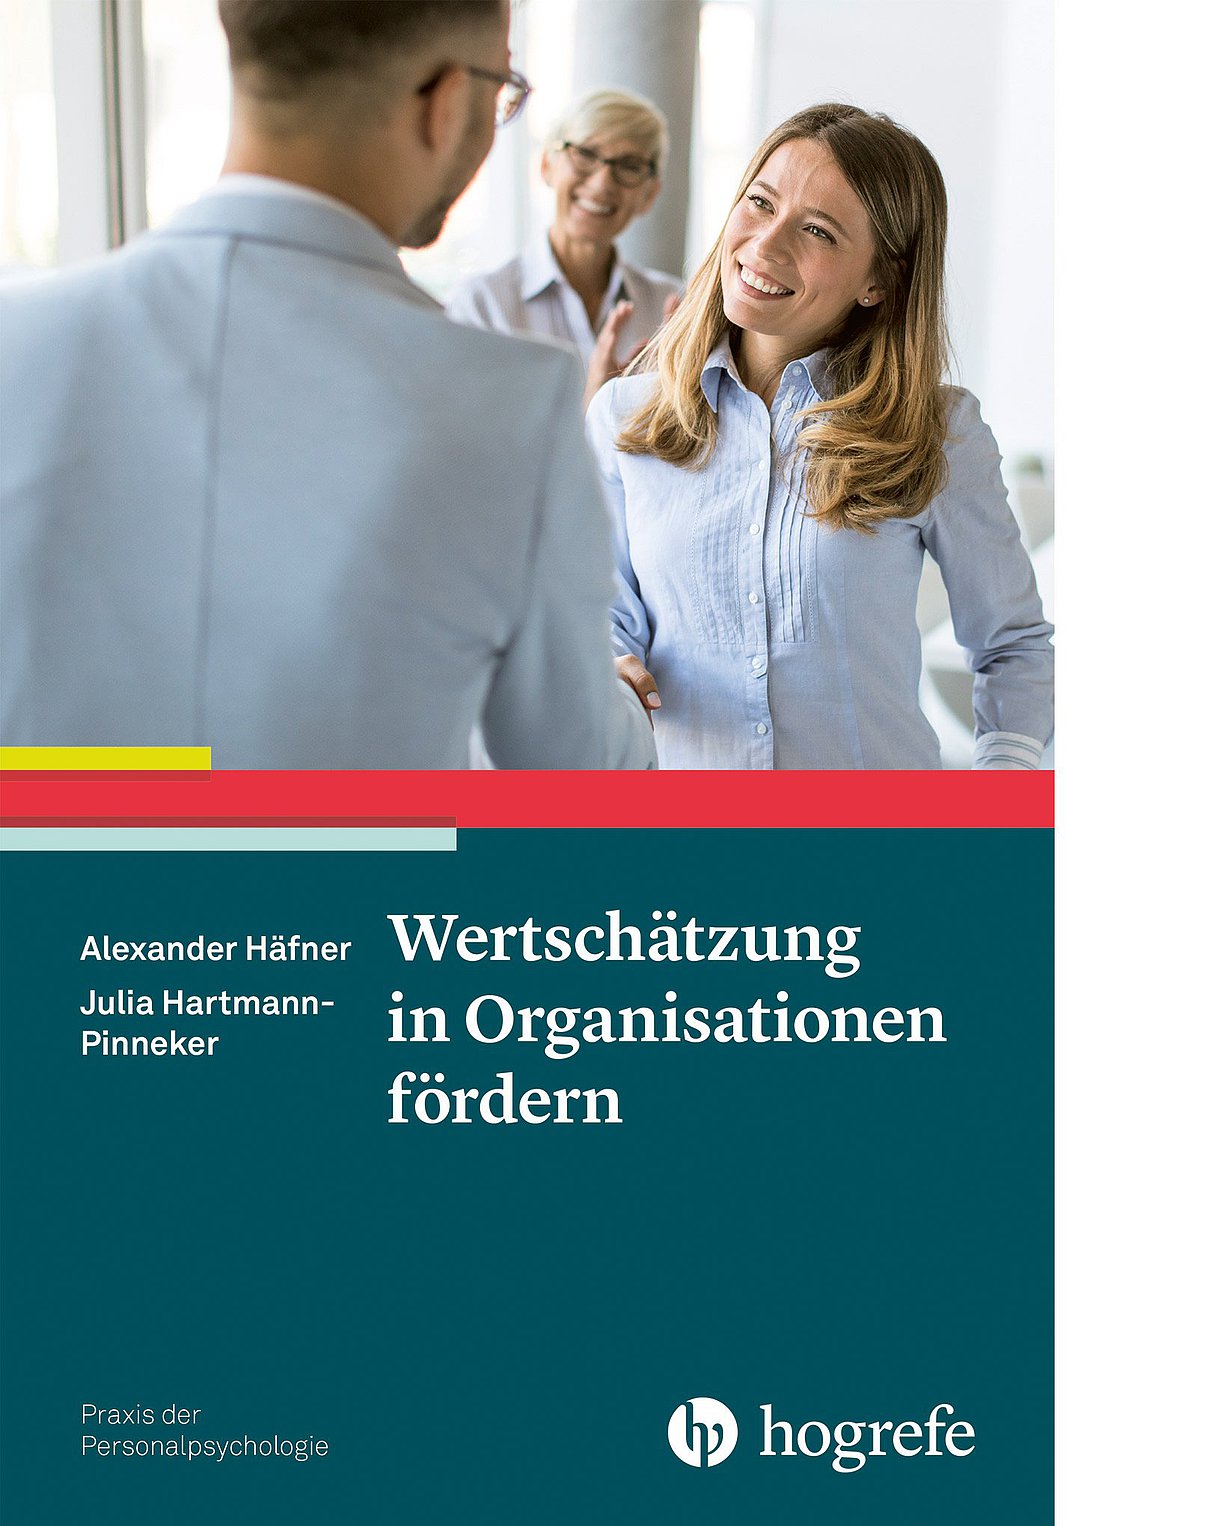 Foto: Buchcover "Wertschätzung in Organisationen fördern" von Alexander Häfner, Julia Hartmann-Pinneker